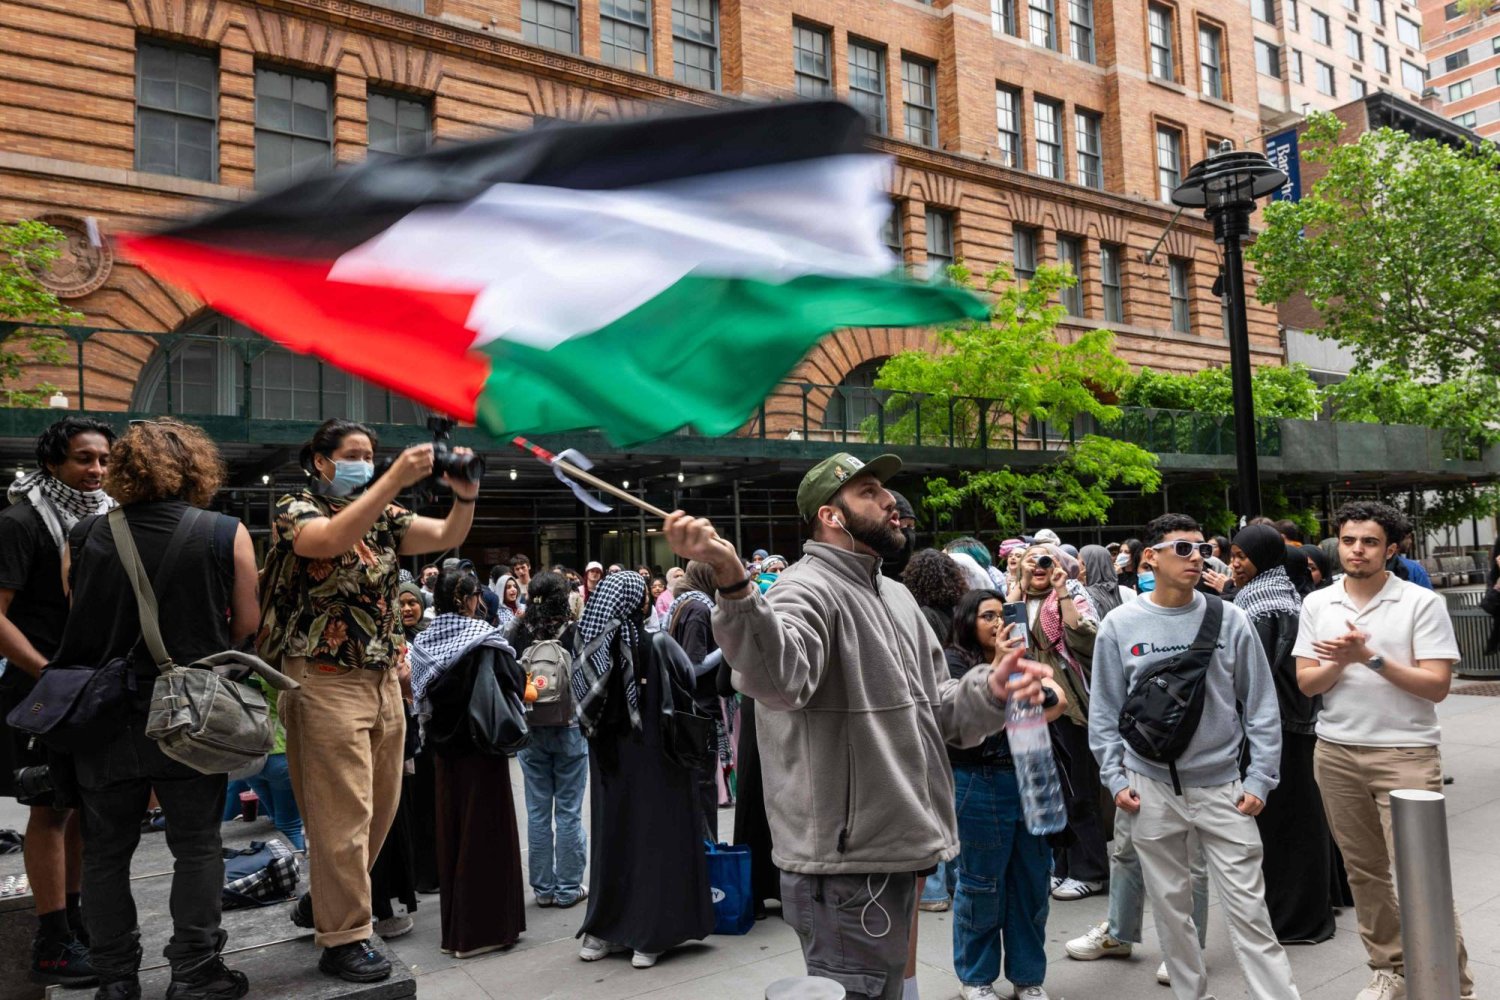 طلاب مؤيدون للفلسطينيين يتظاهرون خارج كلية باروخ في نيويورك (أ.ف.ب)